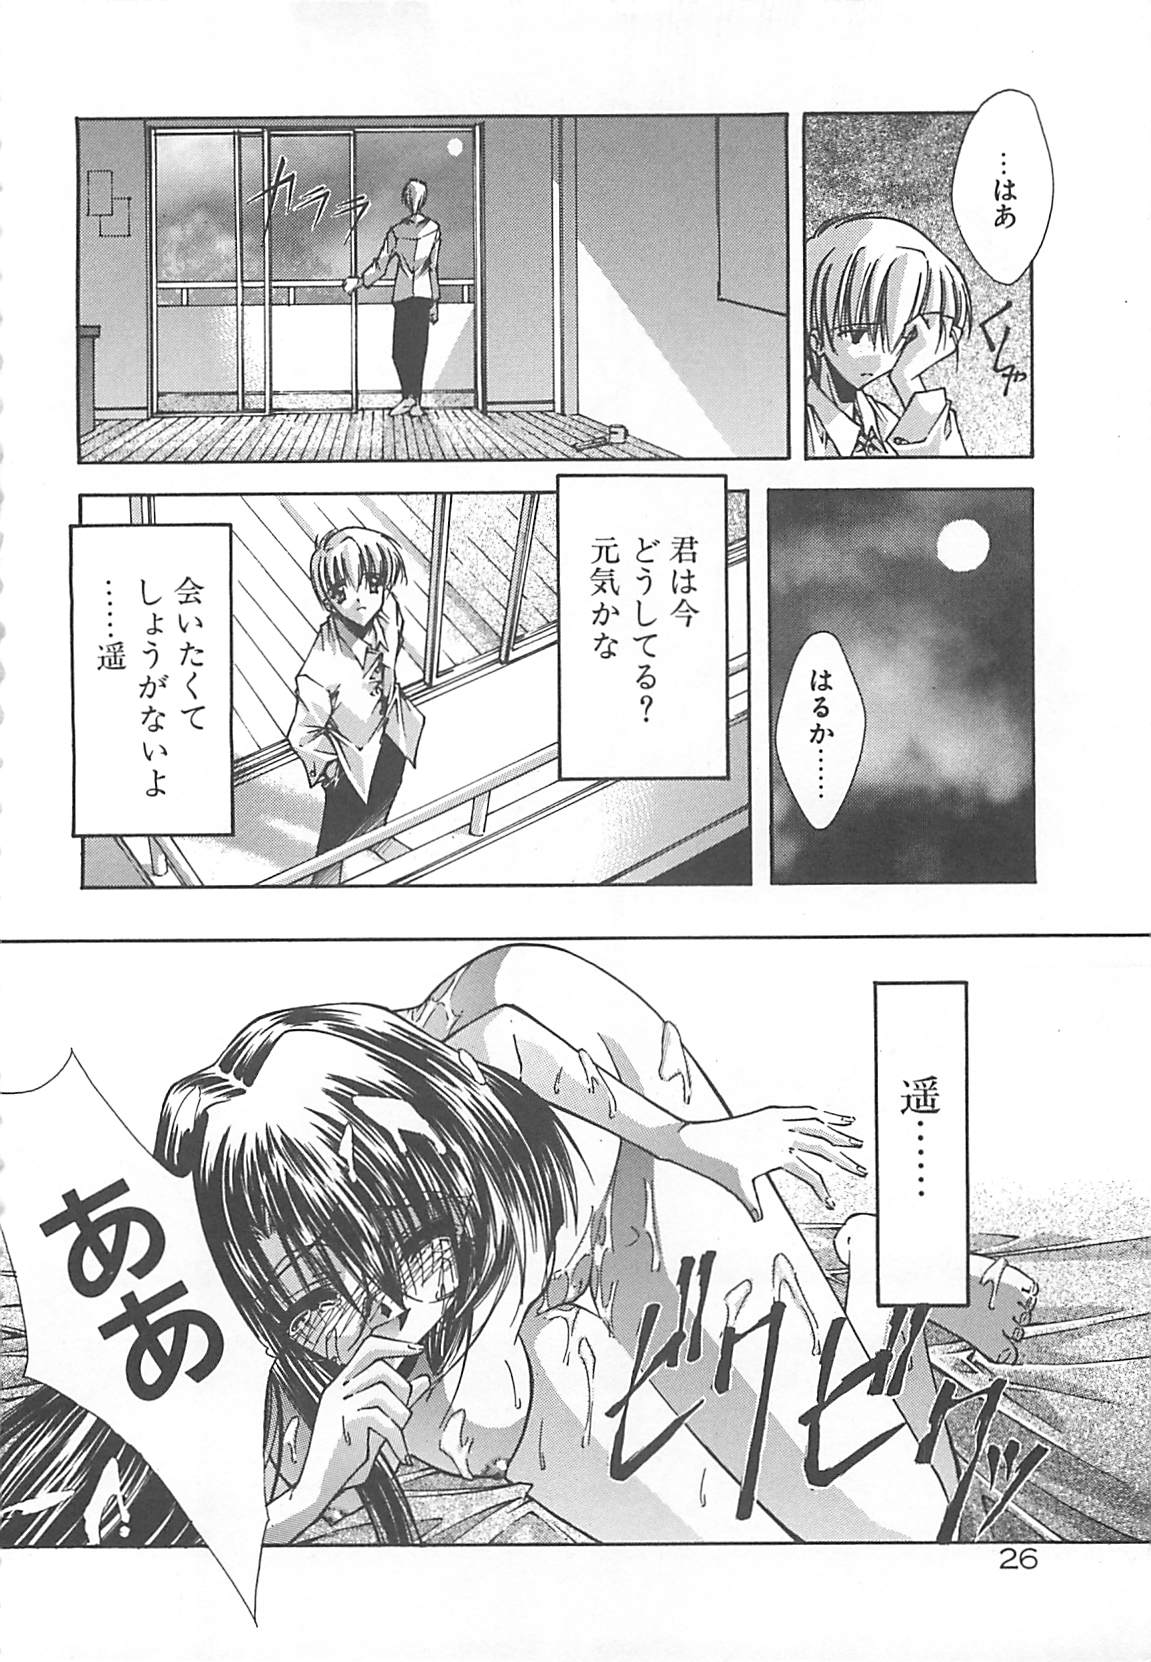 [Serizawa Katsumi] Kanon page 26 full